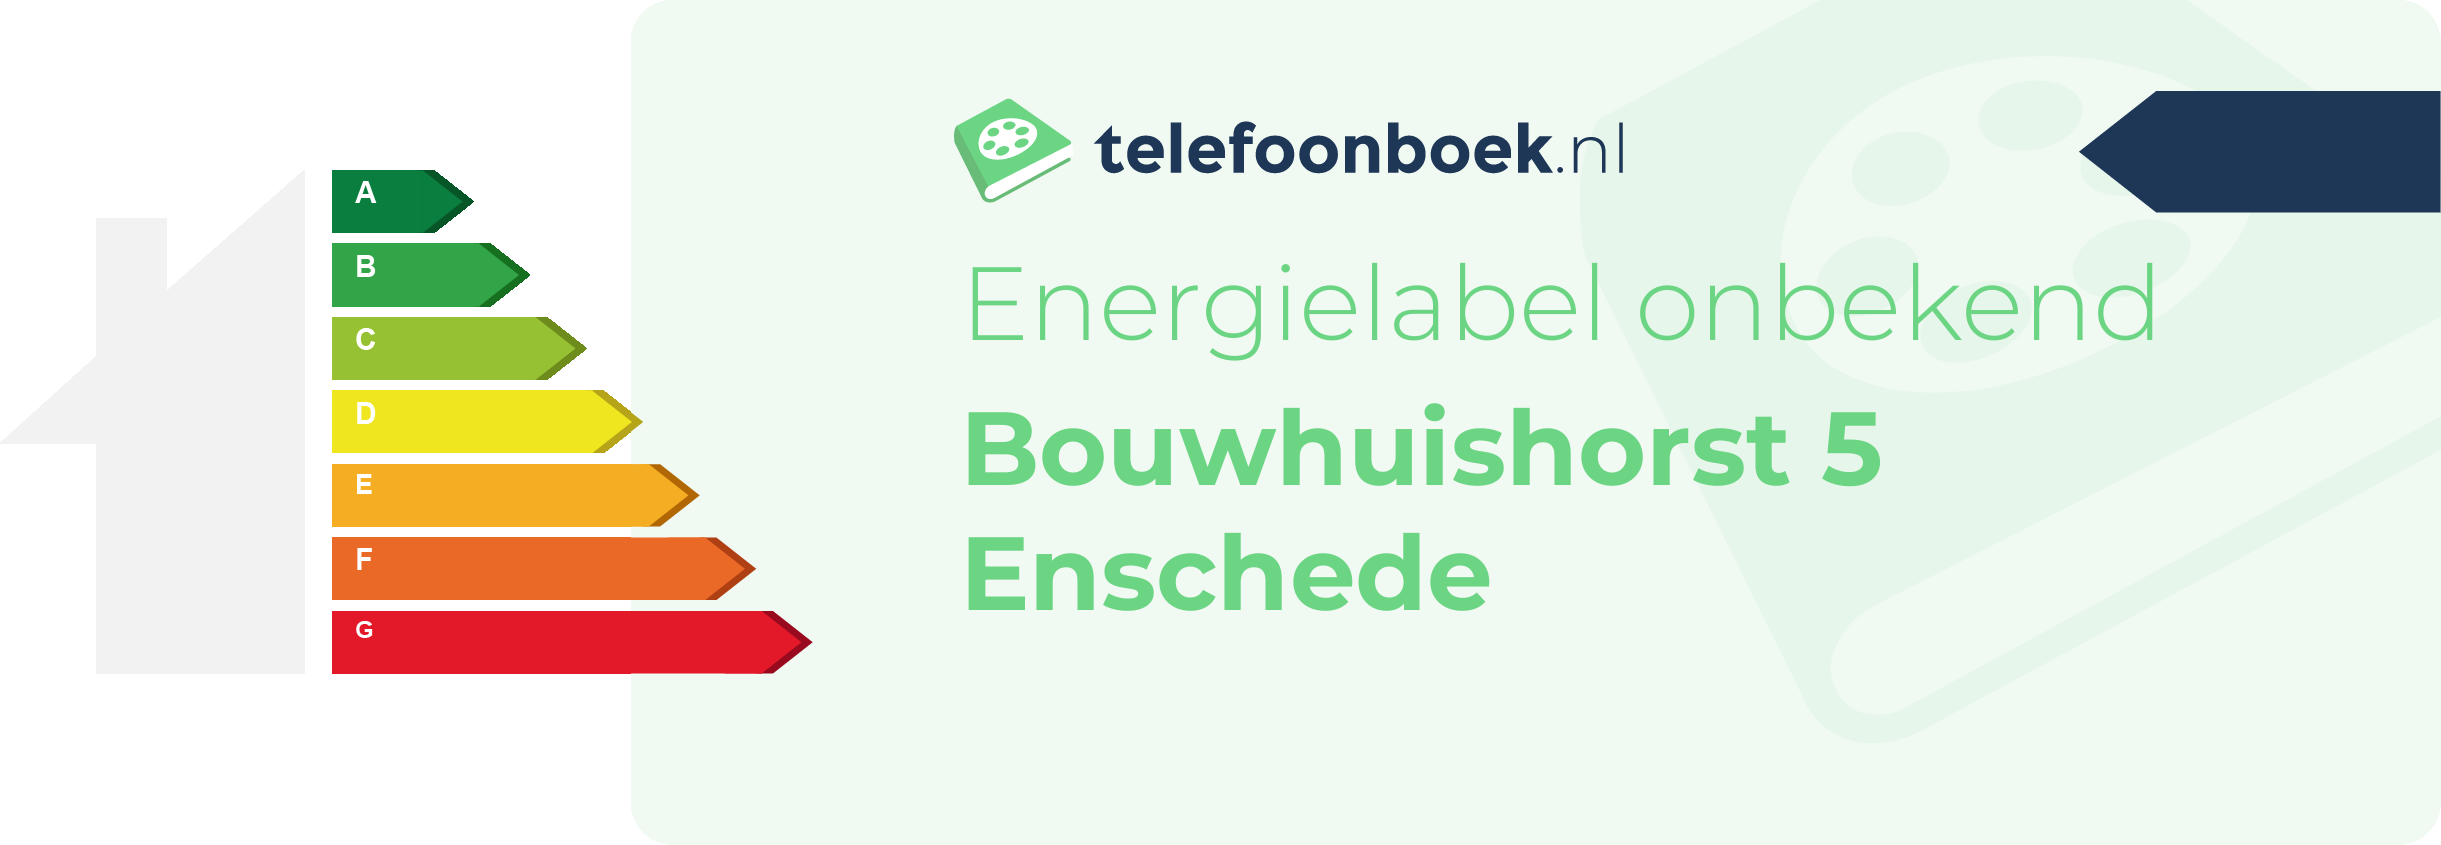 Energielabel Bouwhuishorst 5 Enschede